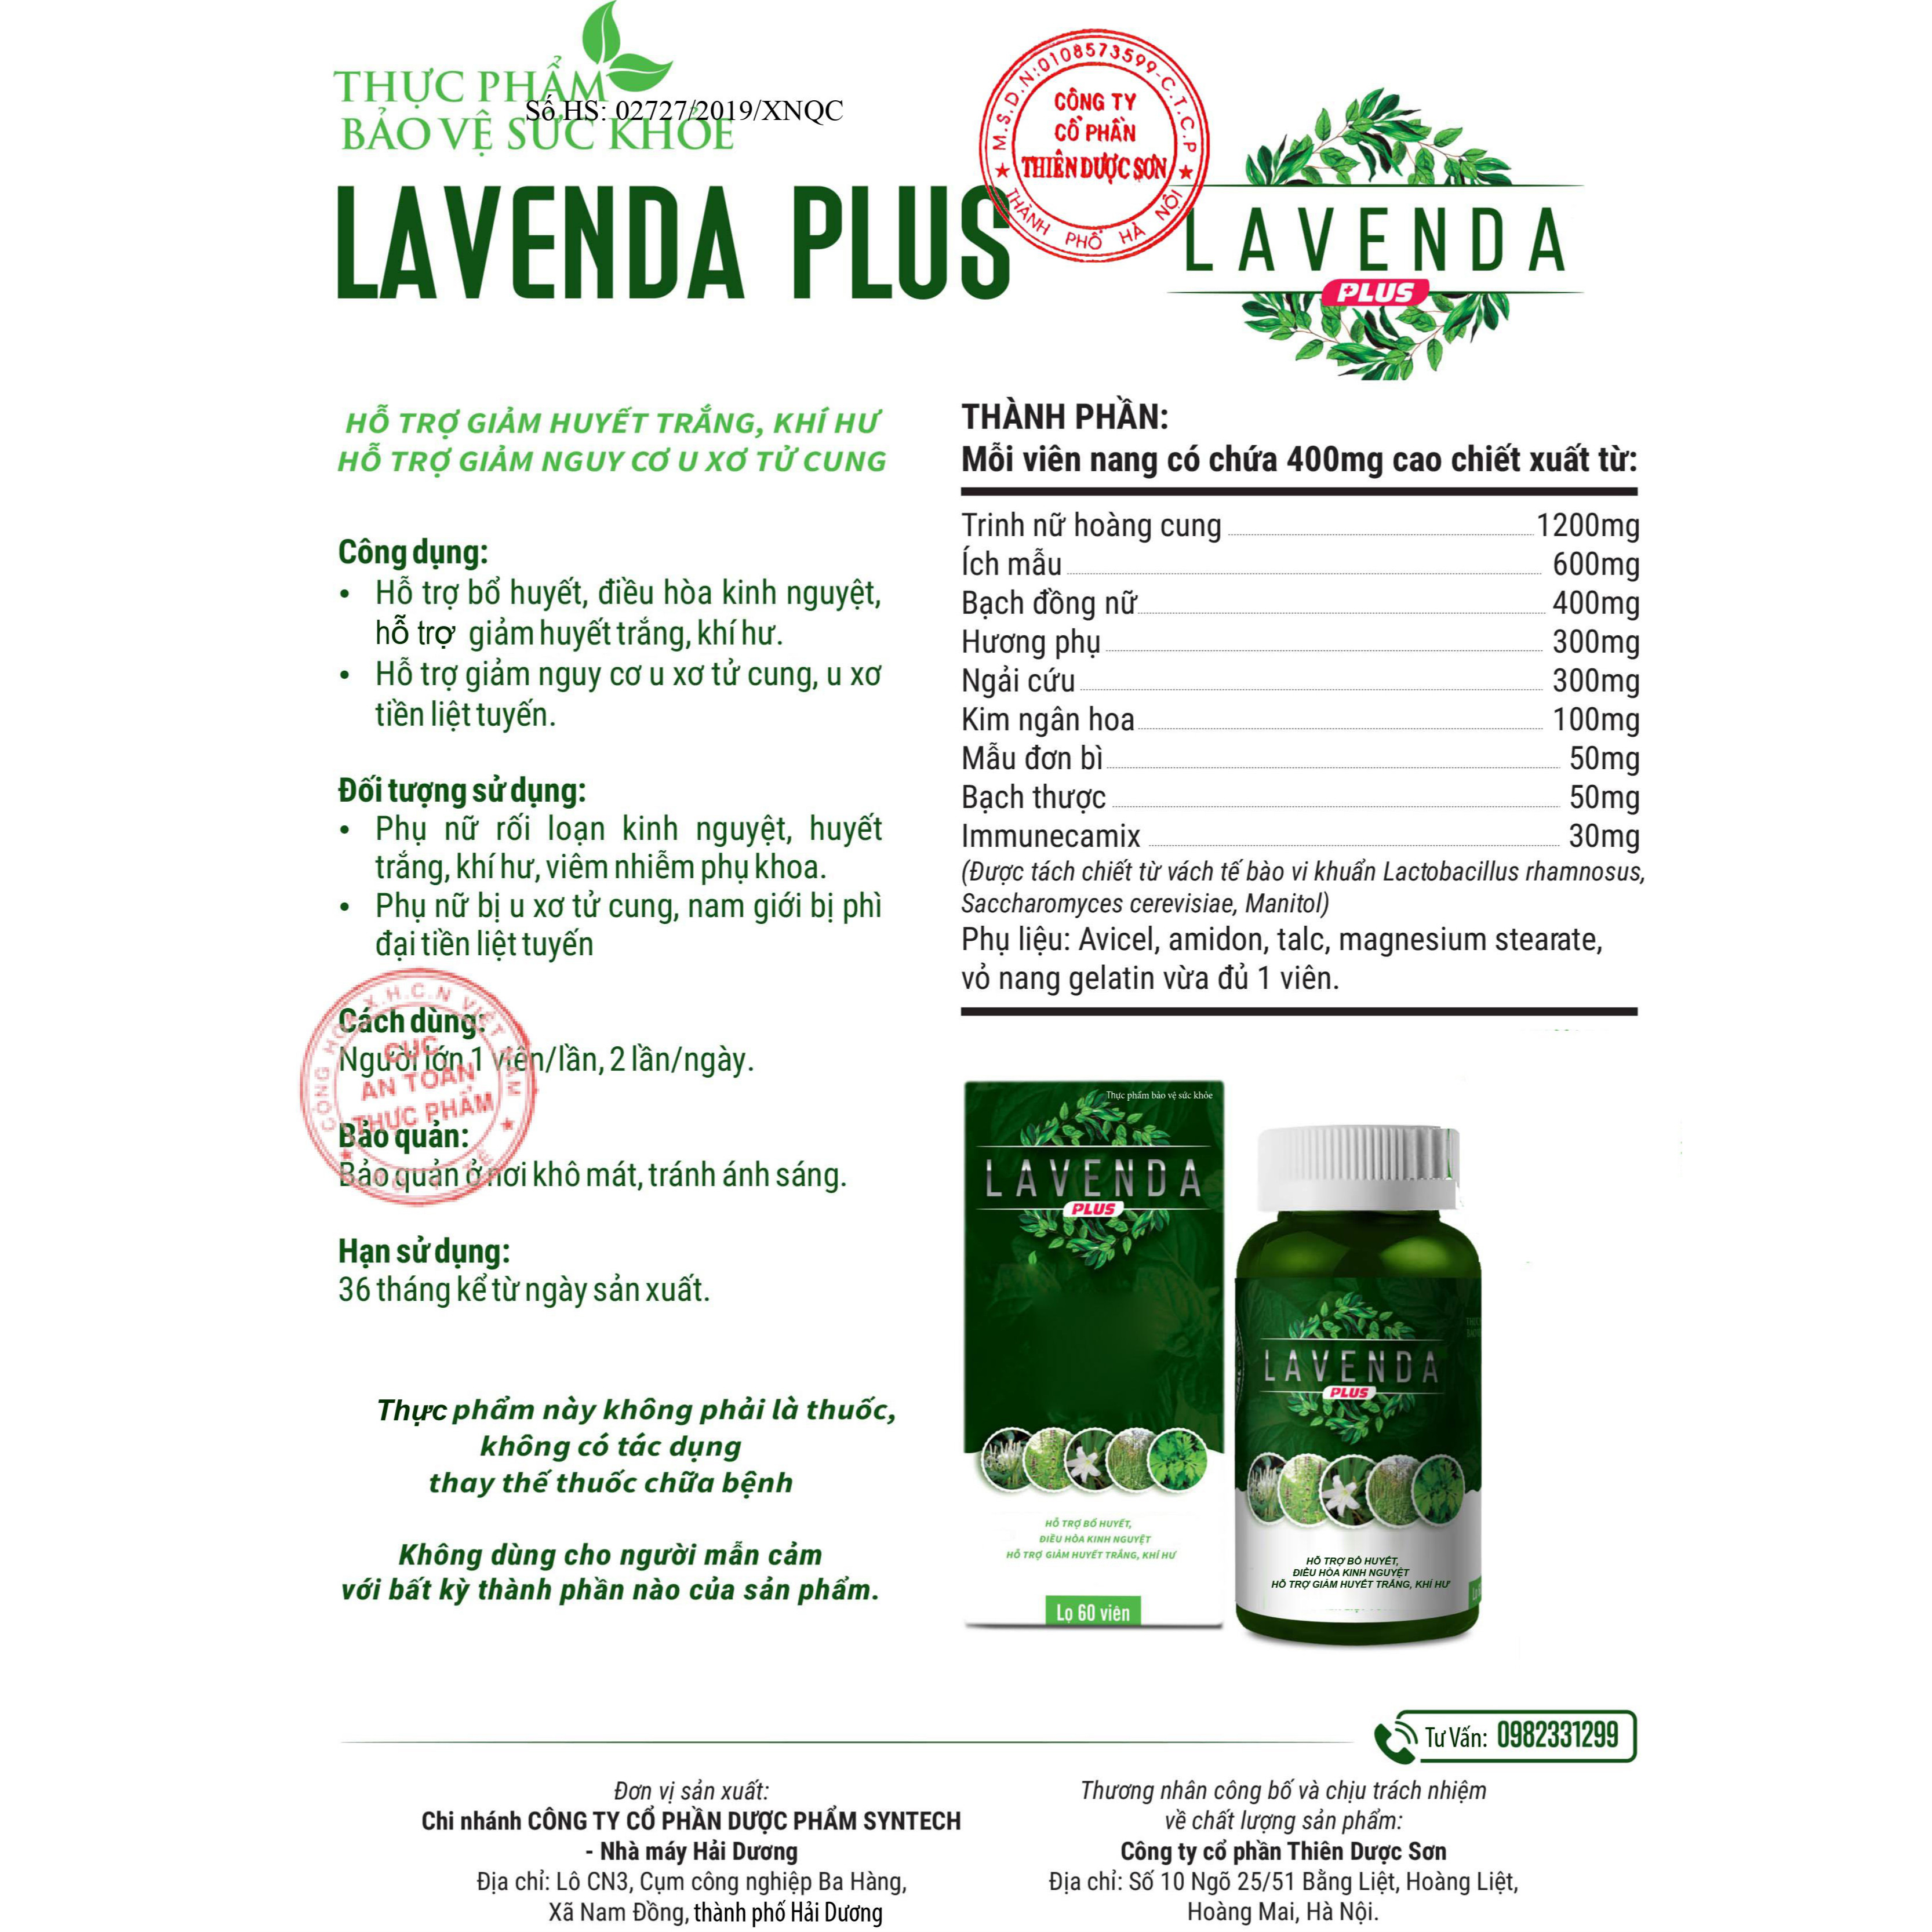 Combo bộ 3 sản phẩm Lavenda xịt, rửa, Lavenda Plus kết hợp Hỗ trợ điều trị hiệu quả các bệnh Phụ khoa, nhanh chóng cải thiện mọi vấn đề liên quan đến phụ khoa, đem lại sức khỏe và hạnh phúc cho người dùng